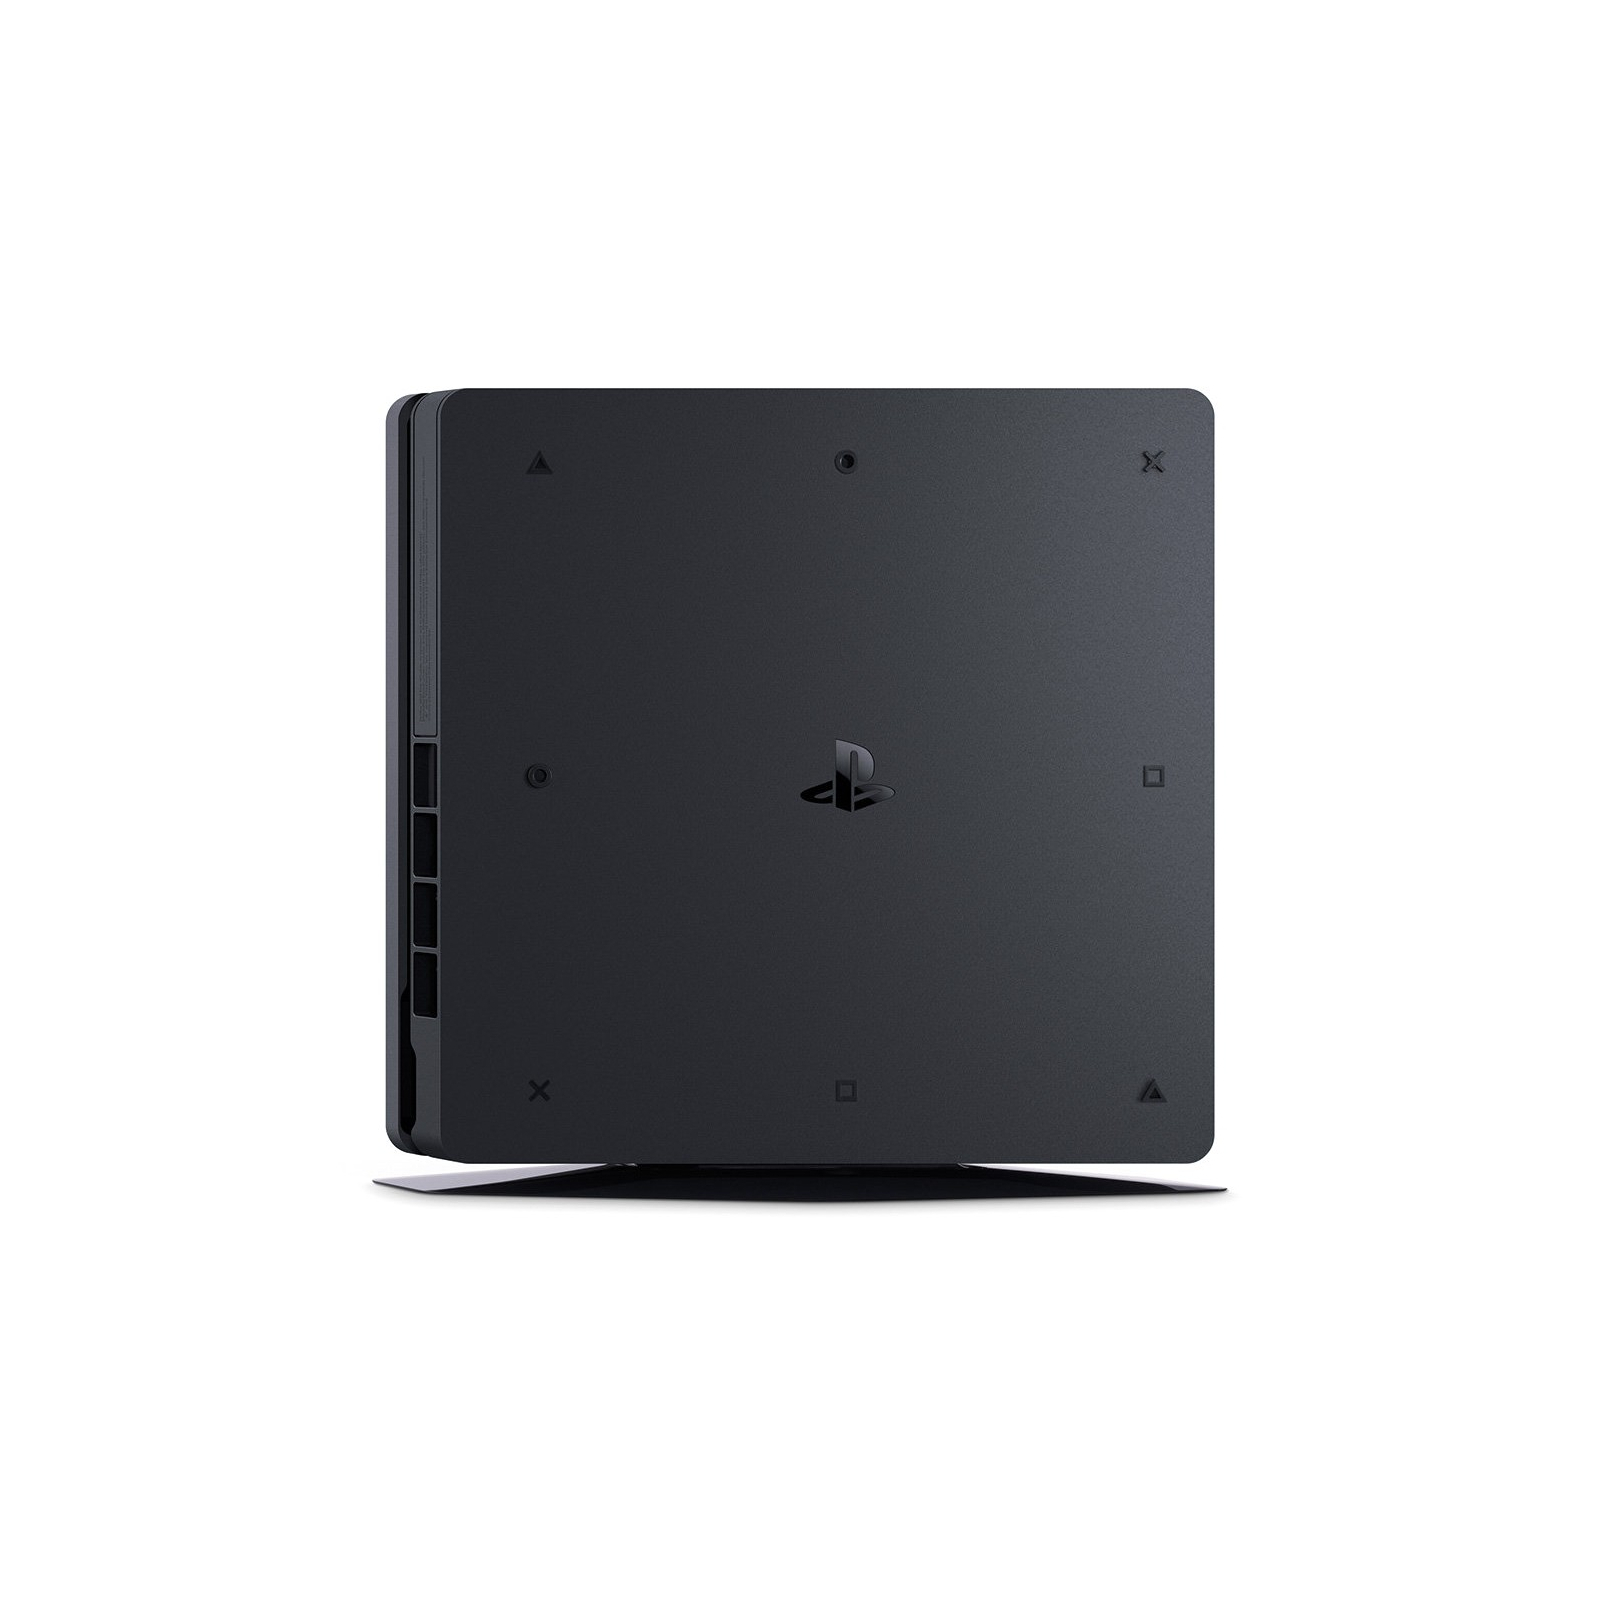 Игровая консоль Sony PlayStation 4 Slim 500Gb Black (CUH-2008) изображение 4